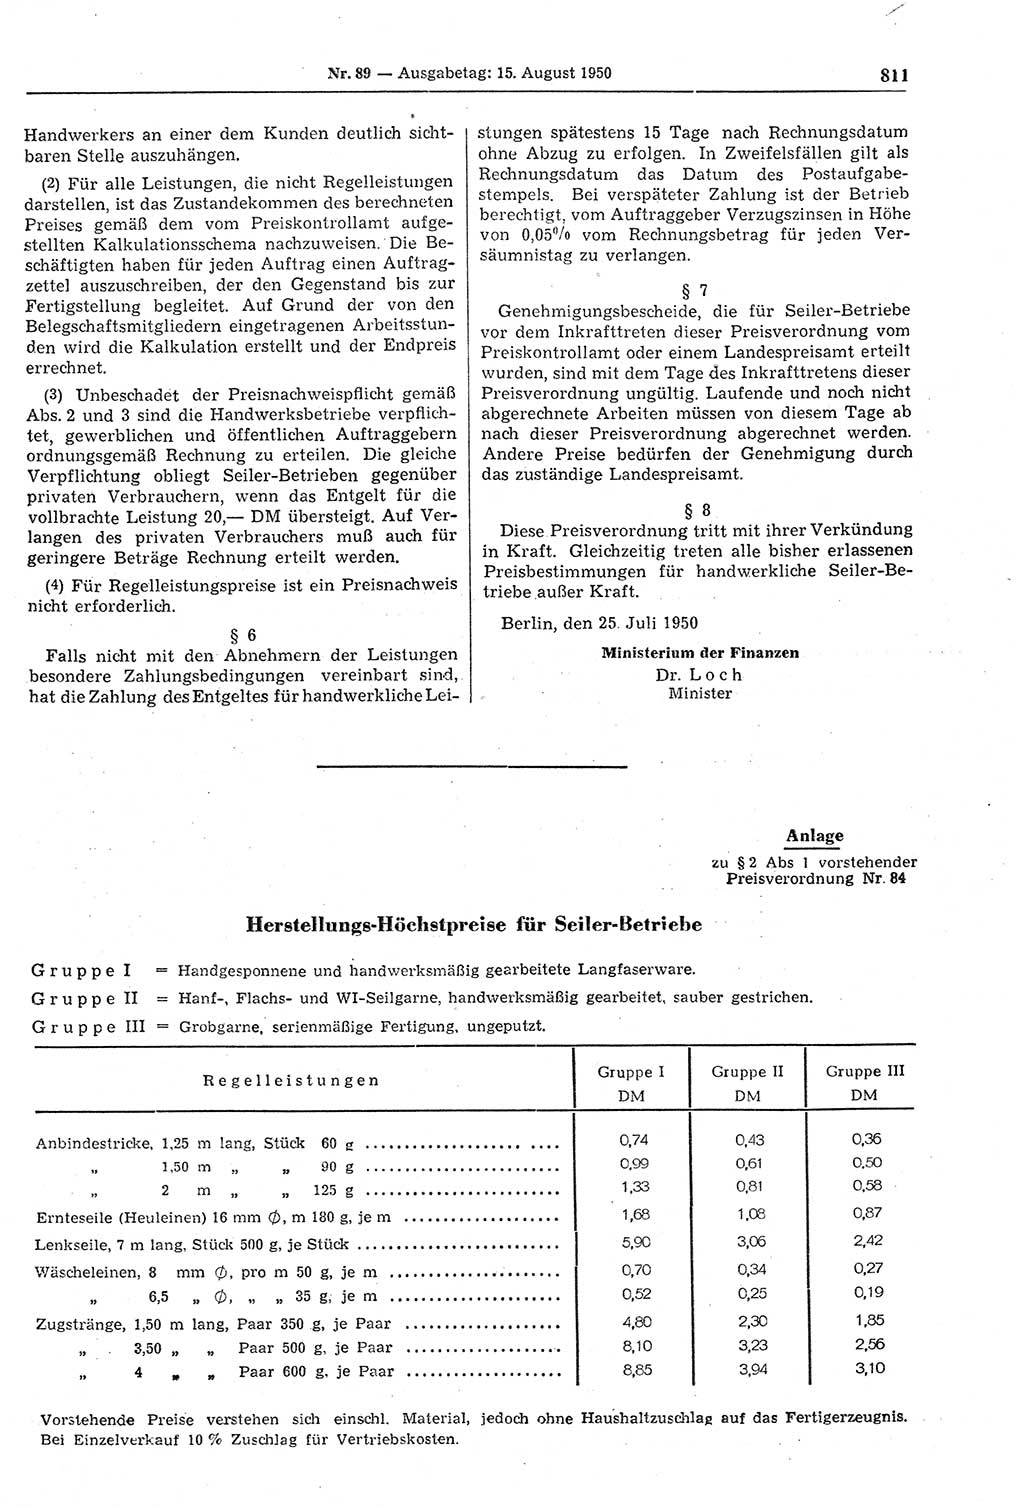 Gesetzblatt (GBl.) der Deutschen Demokratischen Republik (DDR) 1950, Seite 811 (GBl. DDR 1950, S. 811)